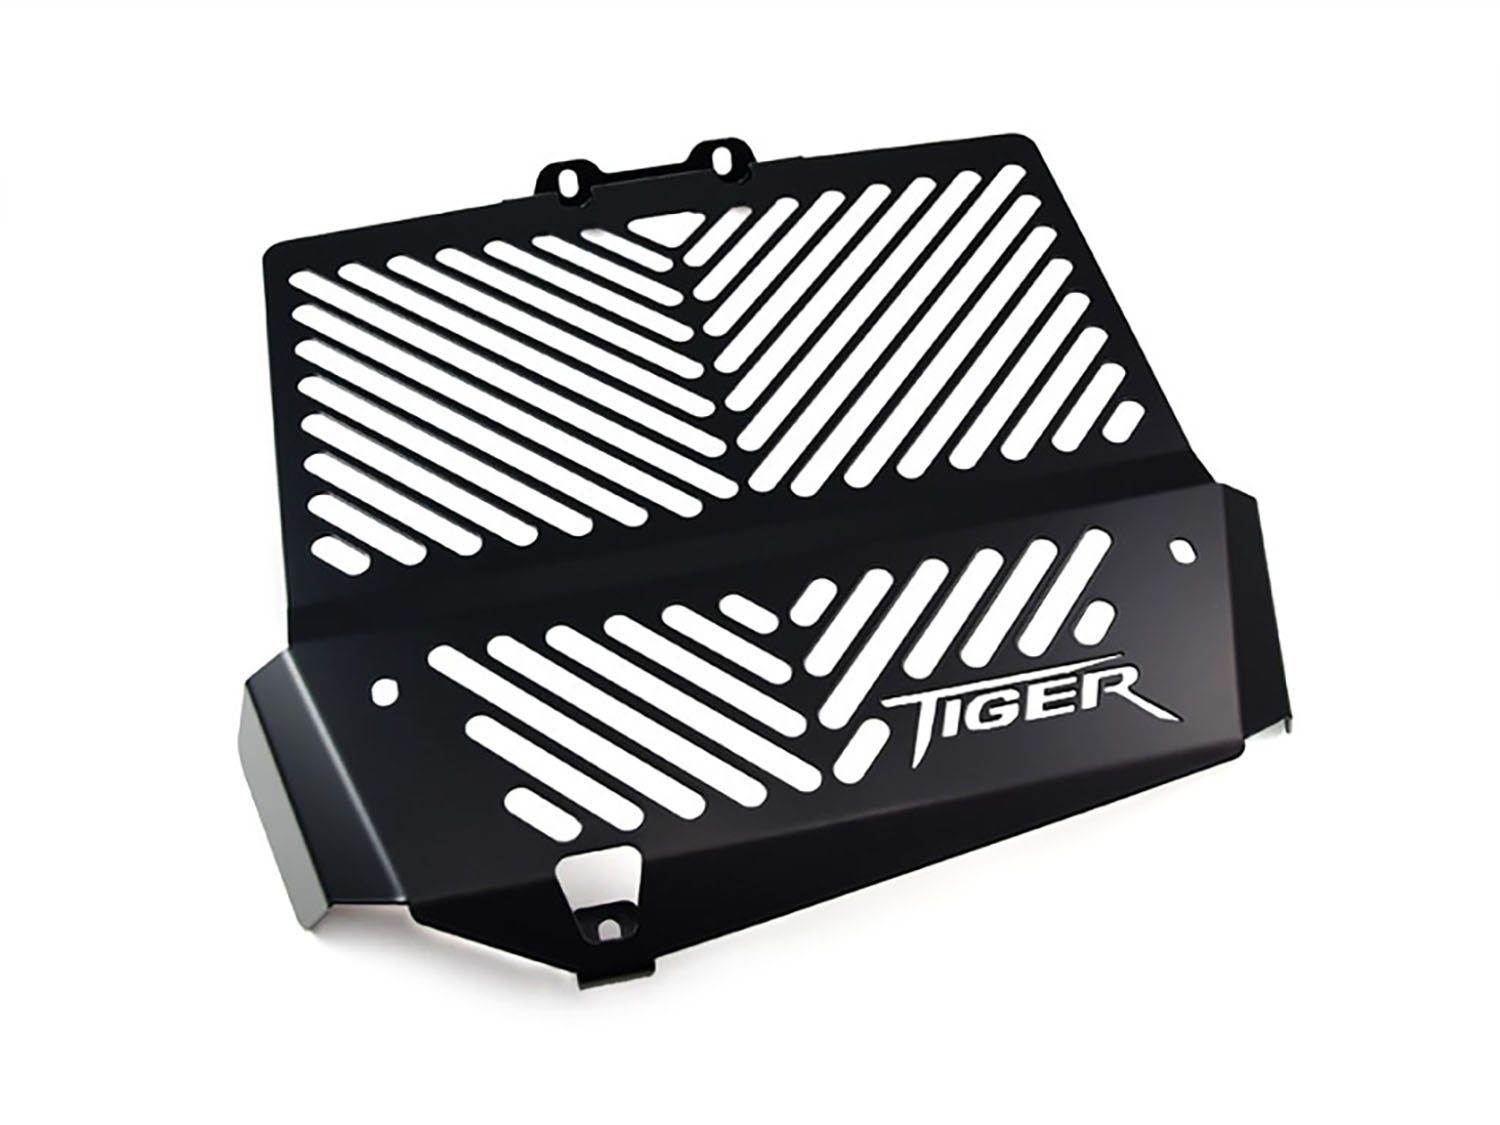 ZIEGER schwarz, Motorrad-Additiv Logo Tiger Motorradkühlerabdeckung für Kühlerabdeckung 1050 Triumph